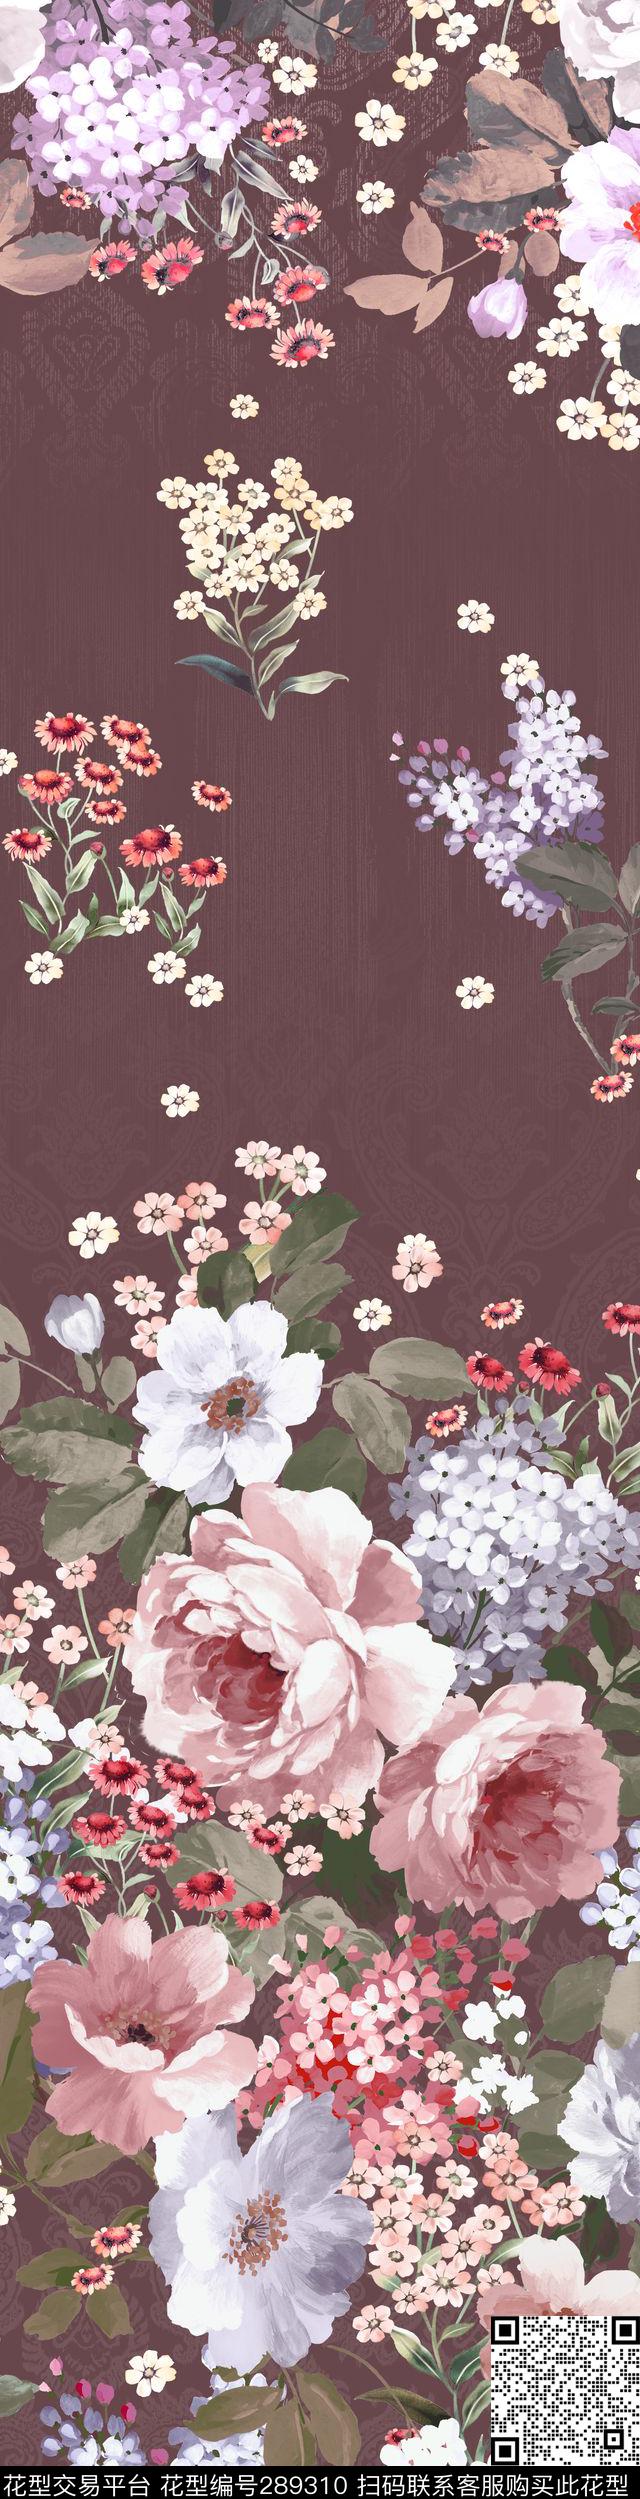 花传统手绘 - 289310 - 传统 花海 手绘 - 传统印花花型 － 床品花型设计 － 瓦栏